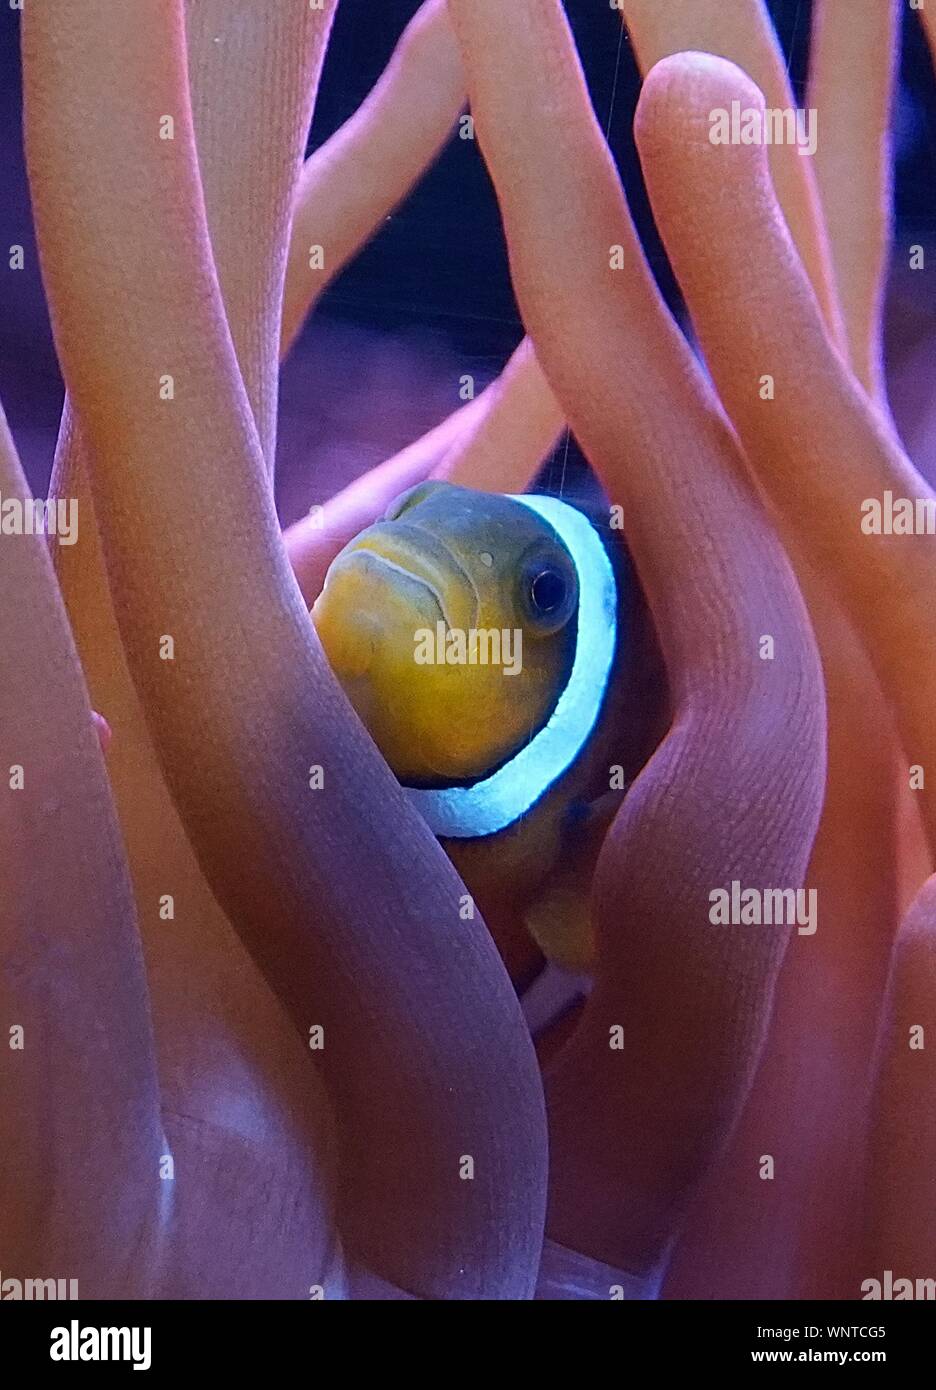 Clownfish amongst orange  sea anemone Stock Photo